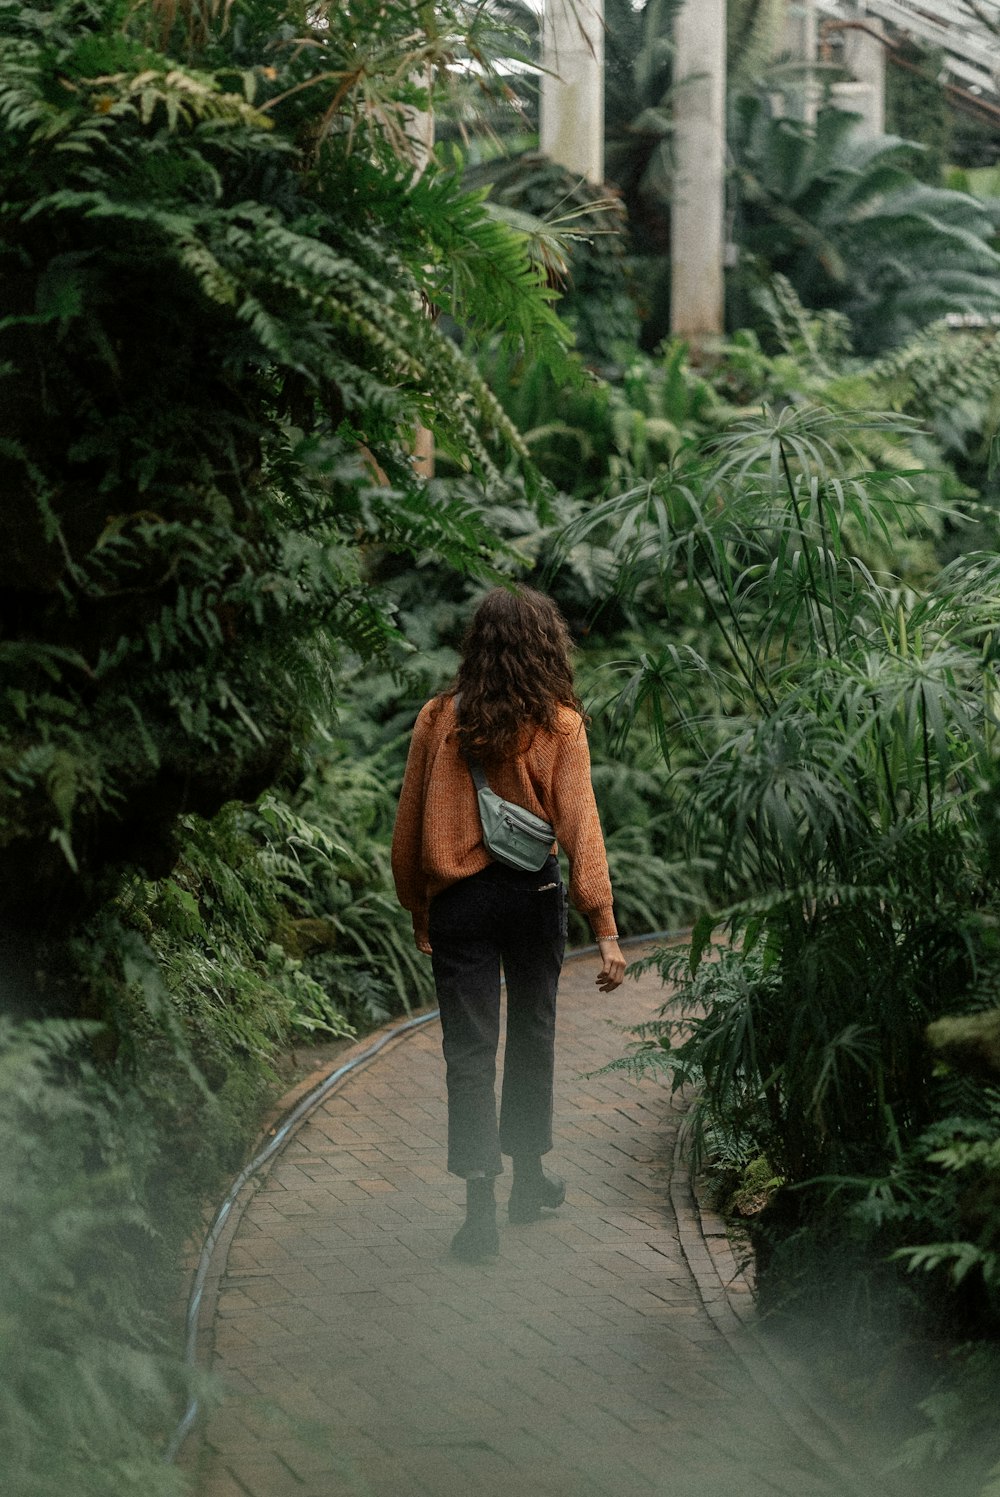 a woman walking down a path through a lush green forest